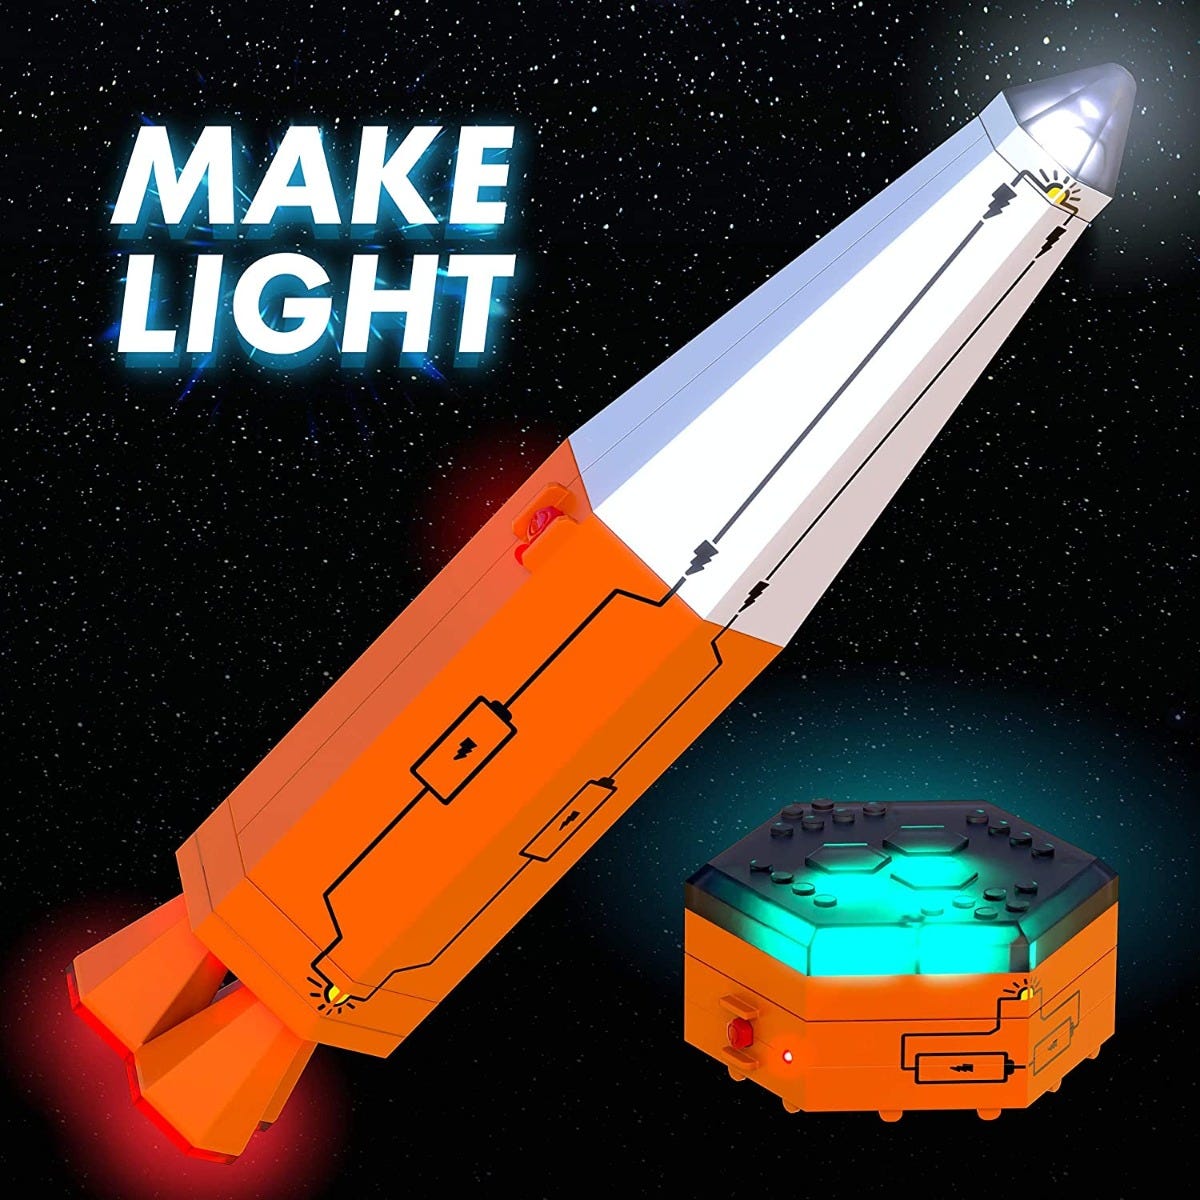 Circuit Explorer® Rocket: Mission – Lights - why.gr